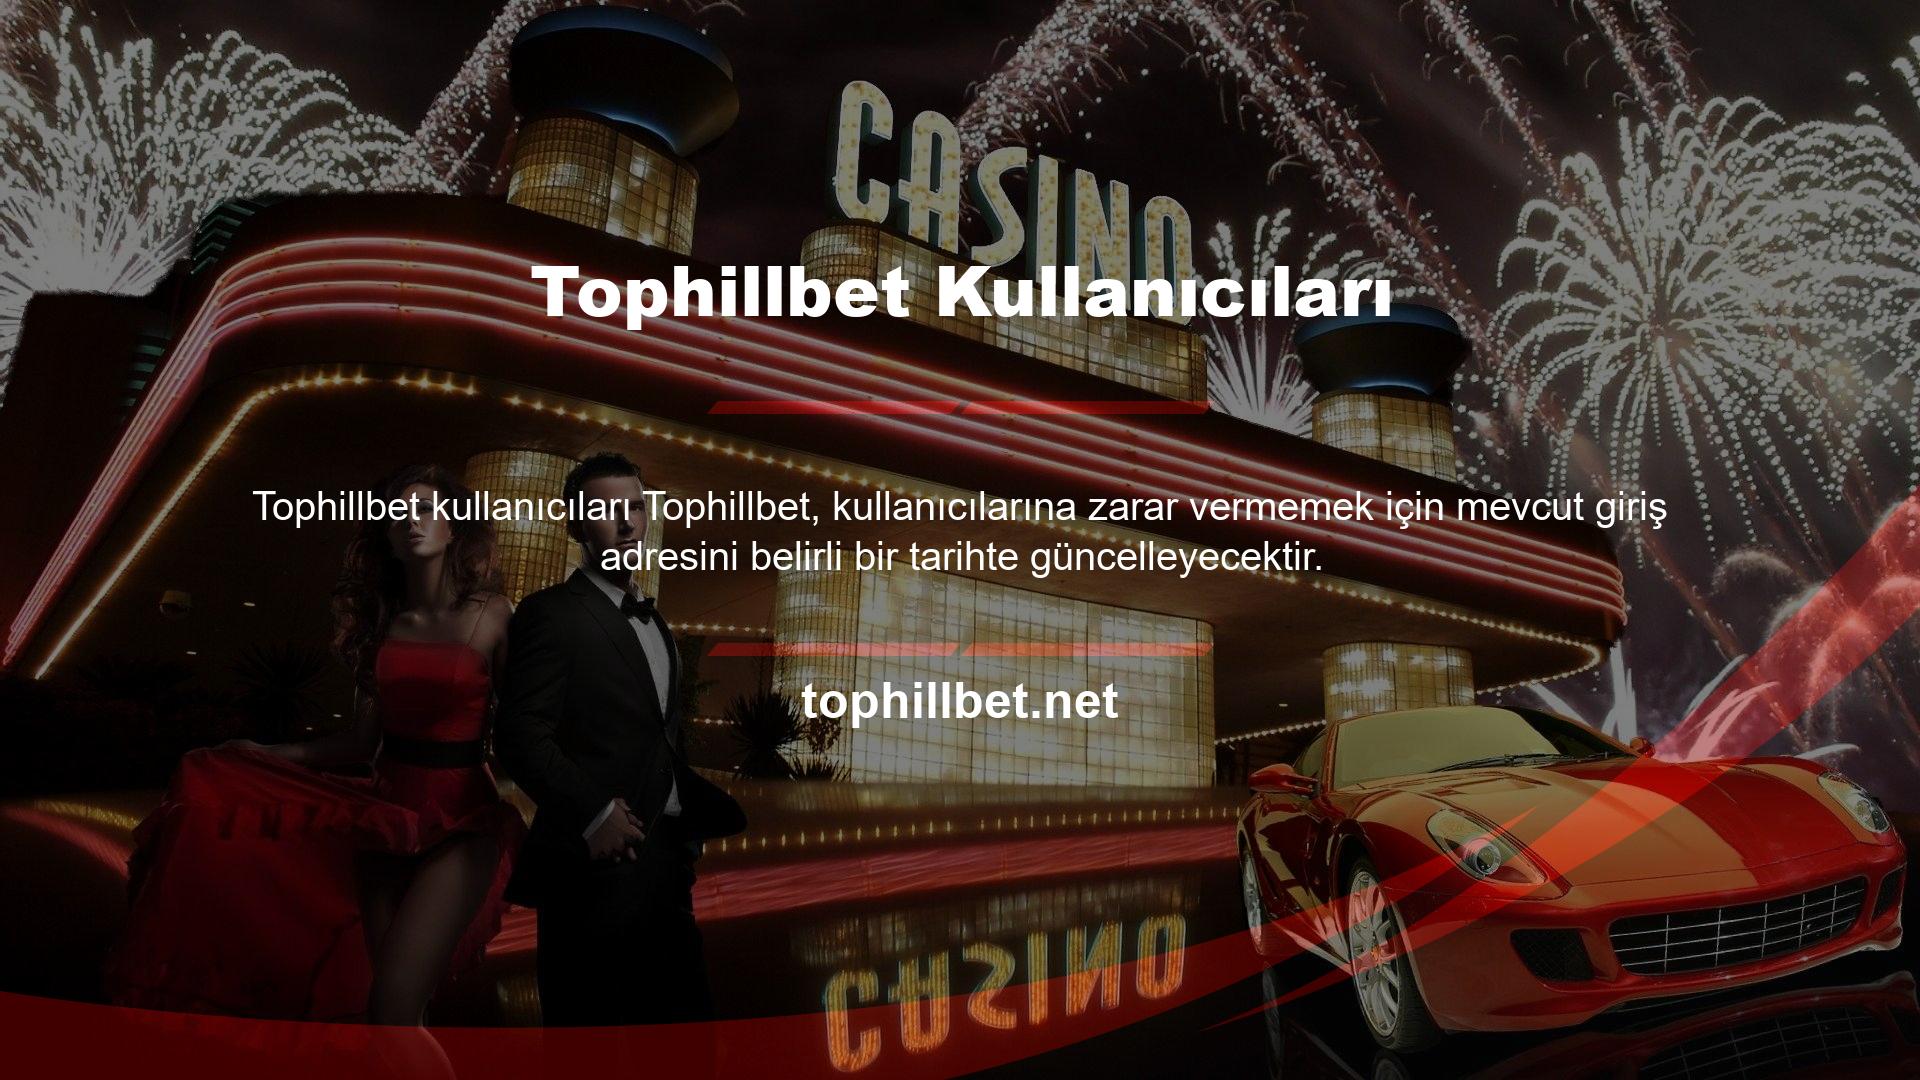 BTK Türkiye'den birçok kumar sitesi alan adı engellendi